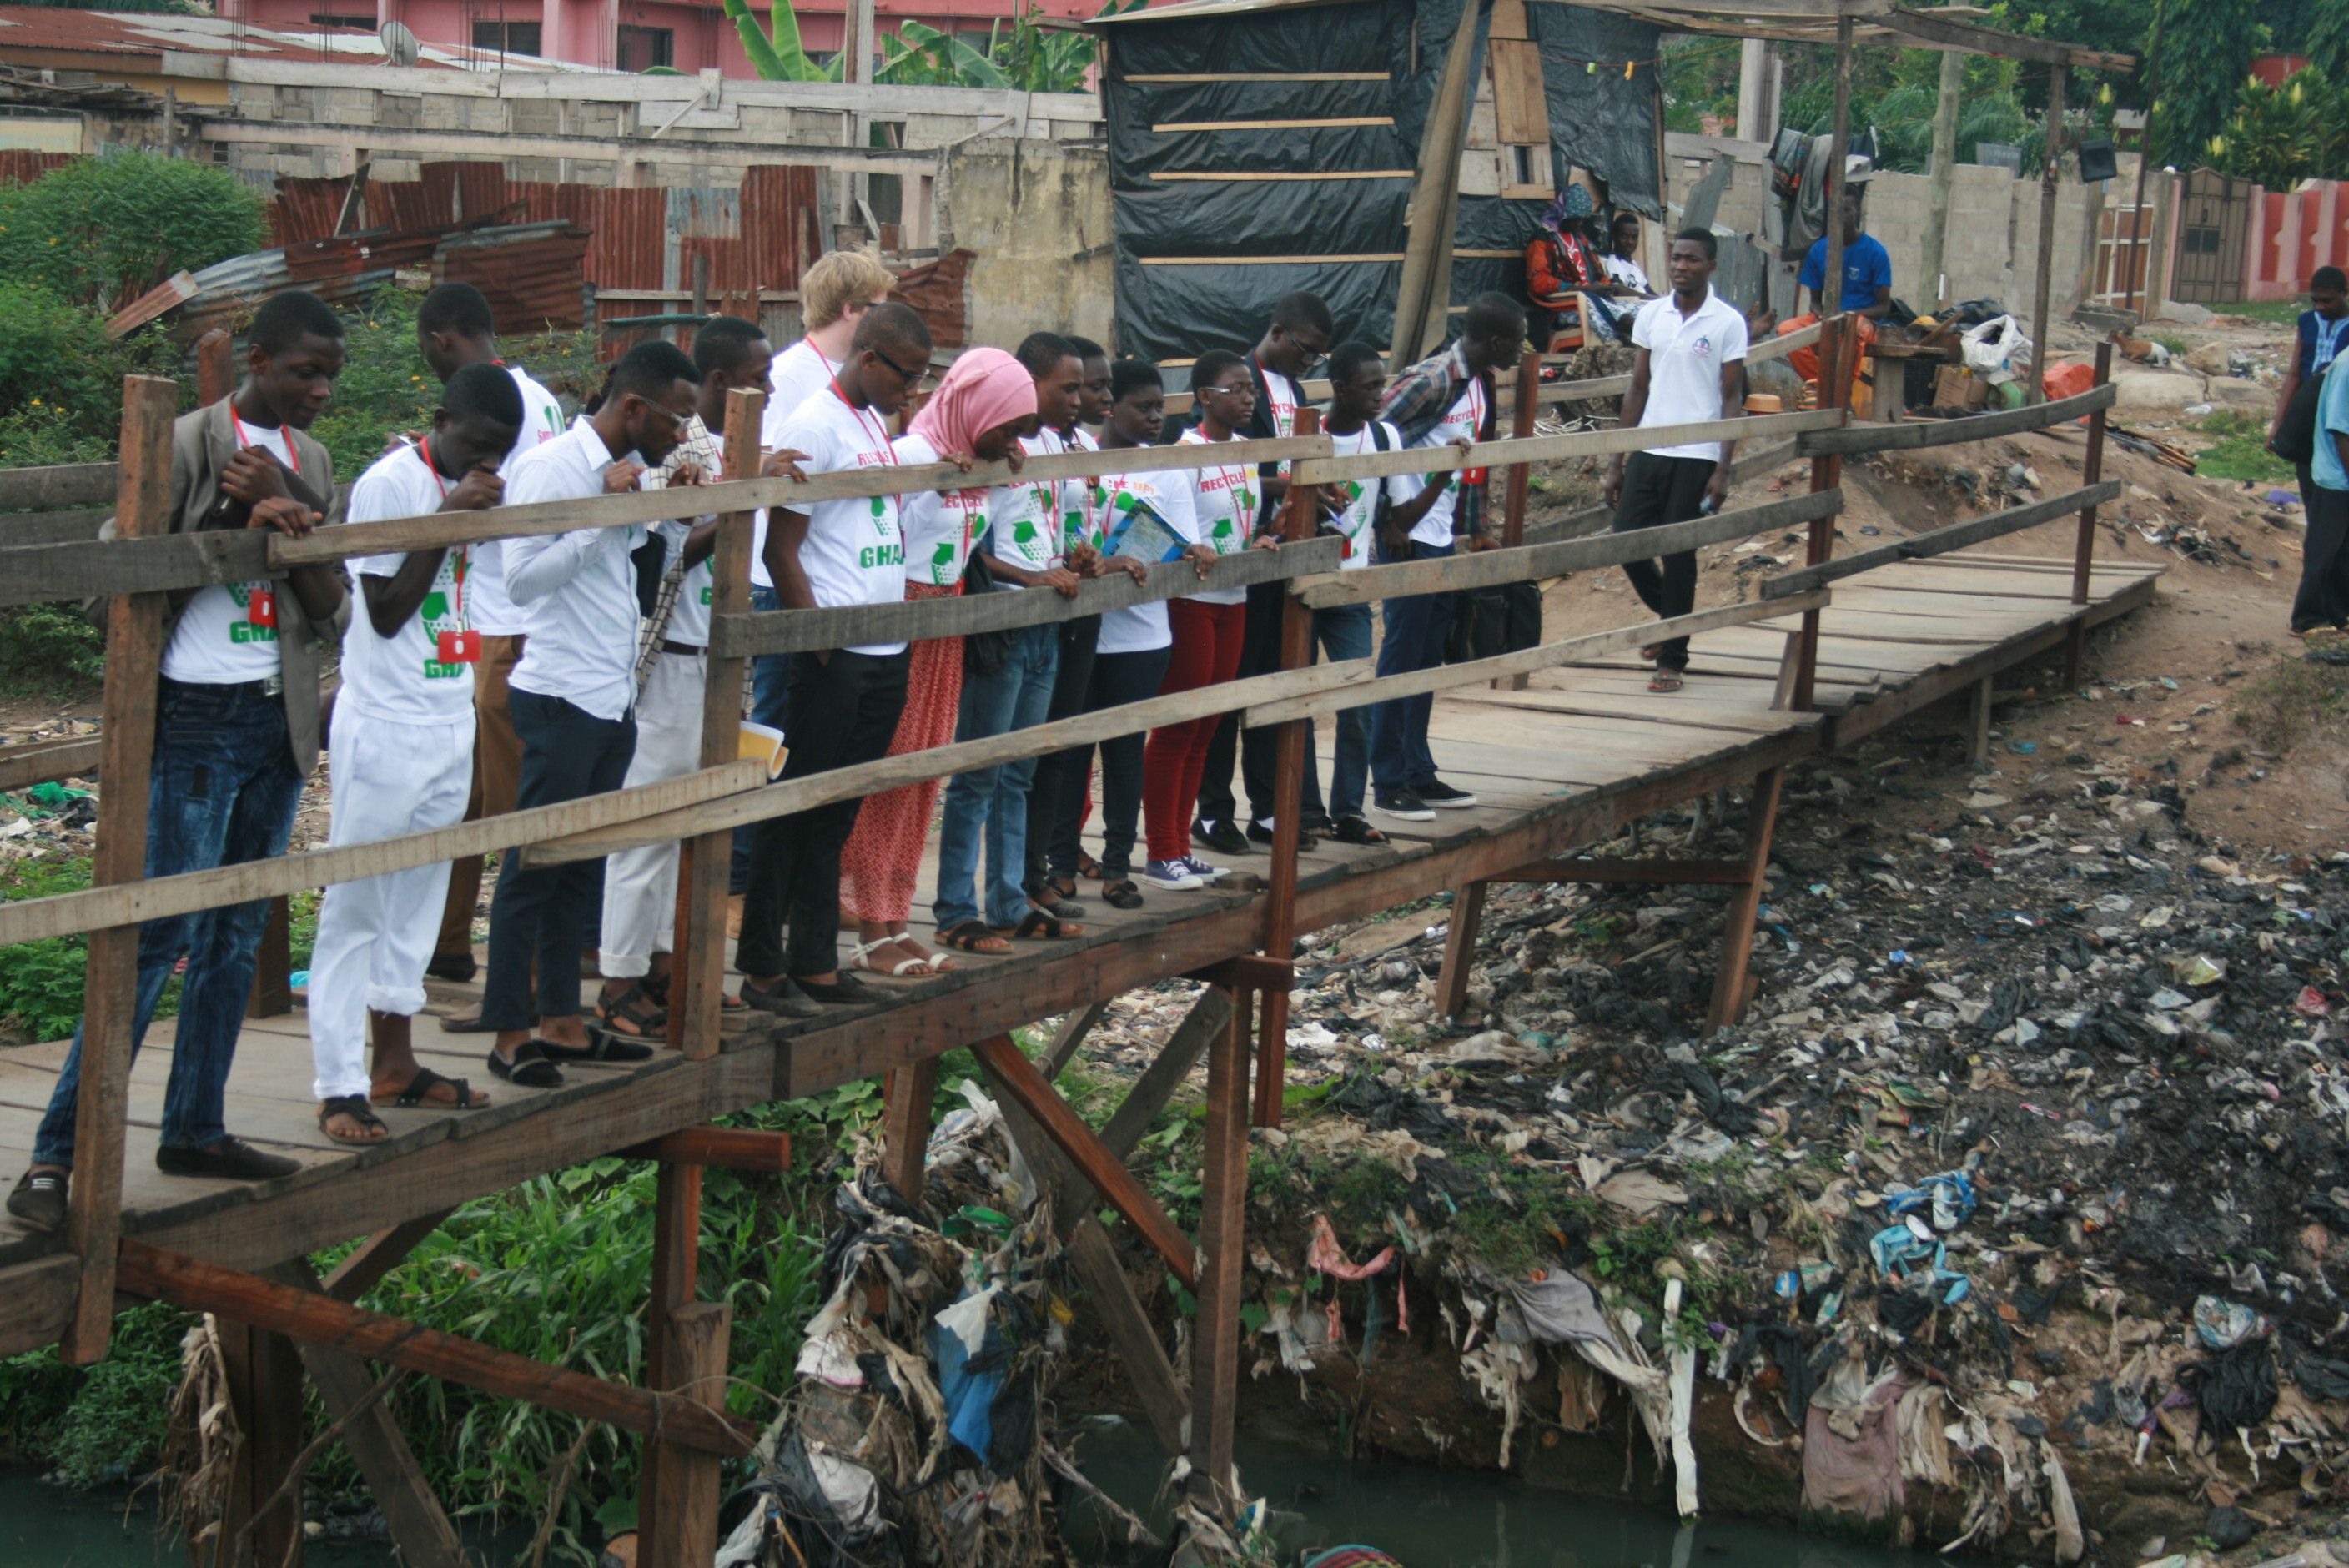 Die Teilnehmer der Summer School machen eine Exkursion zu einer Mülldeponie (Bild: Jonas Schlund).